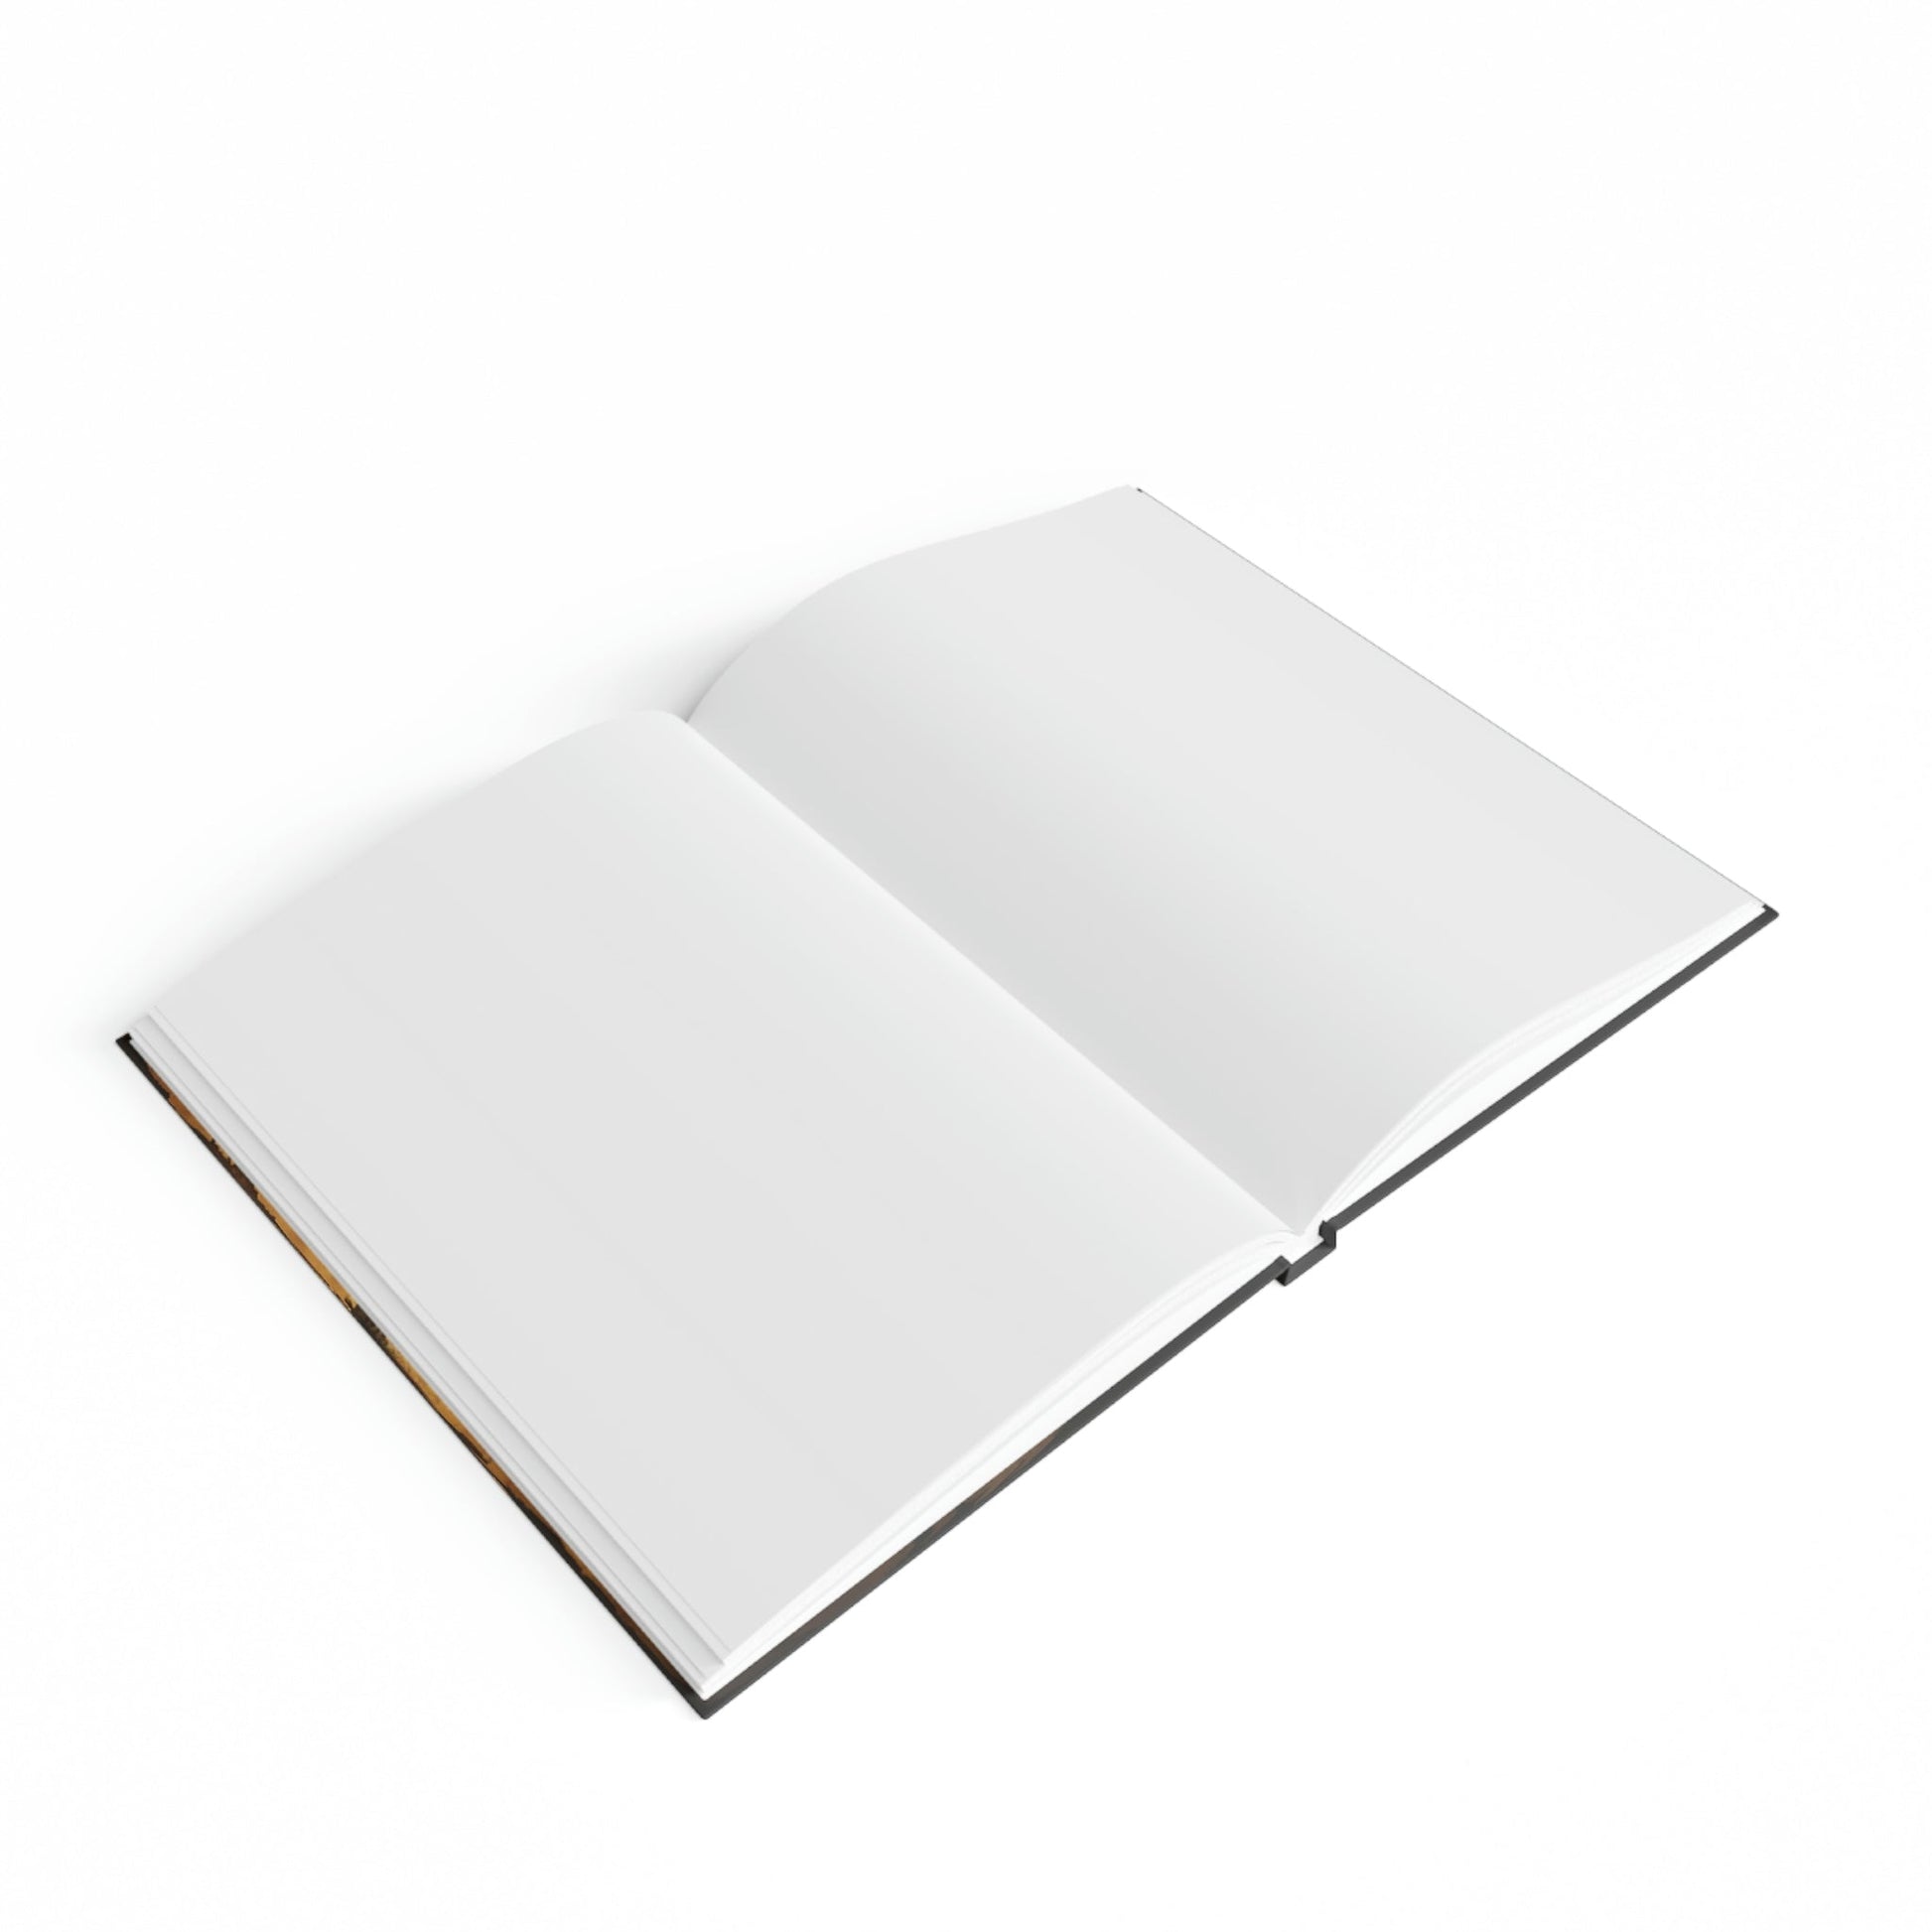 Sketchbook for Kids - Hard Backed Journal